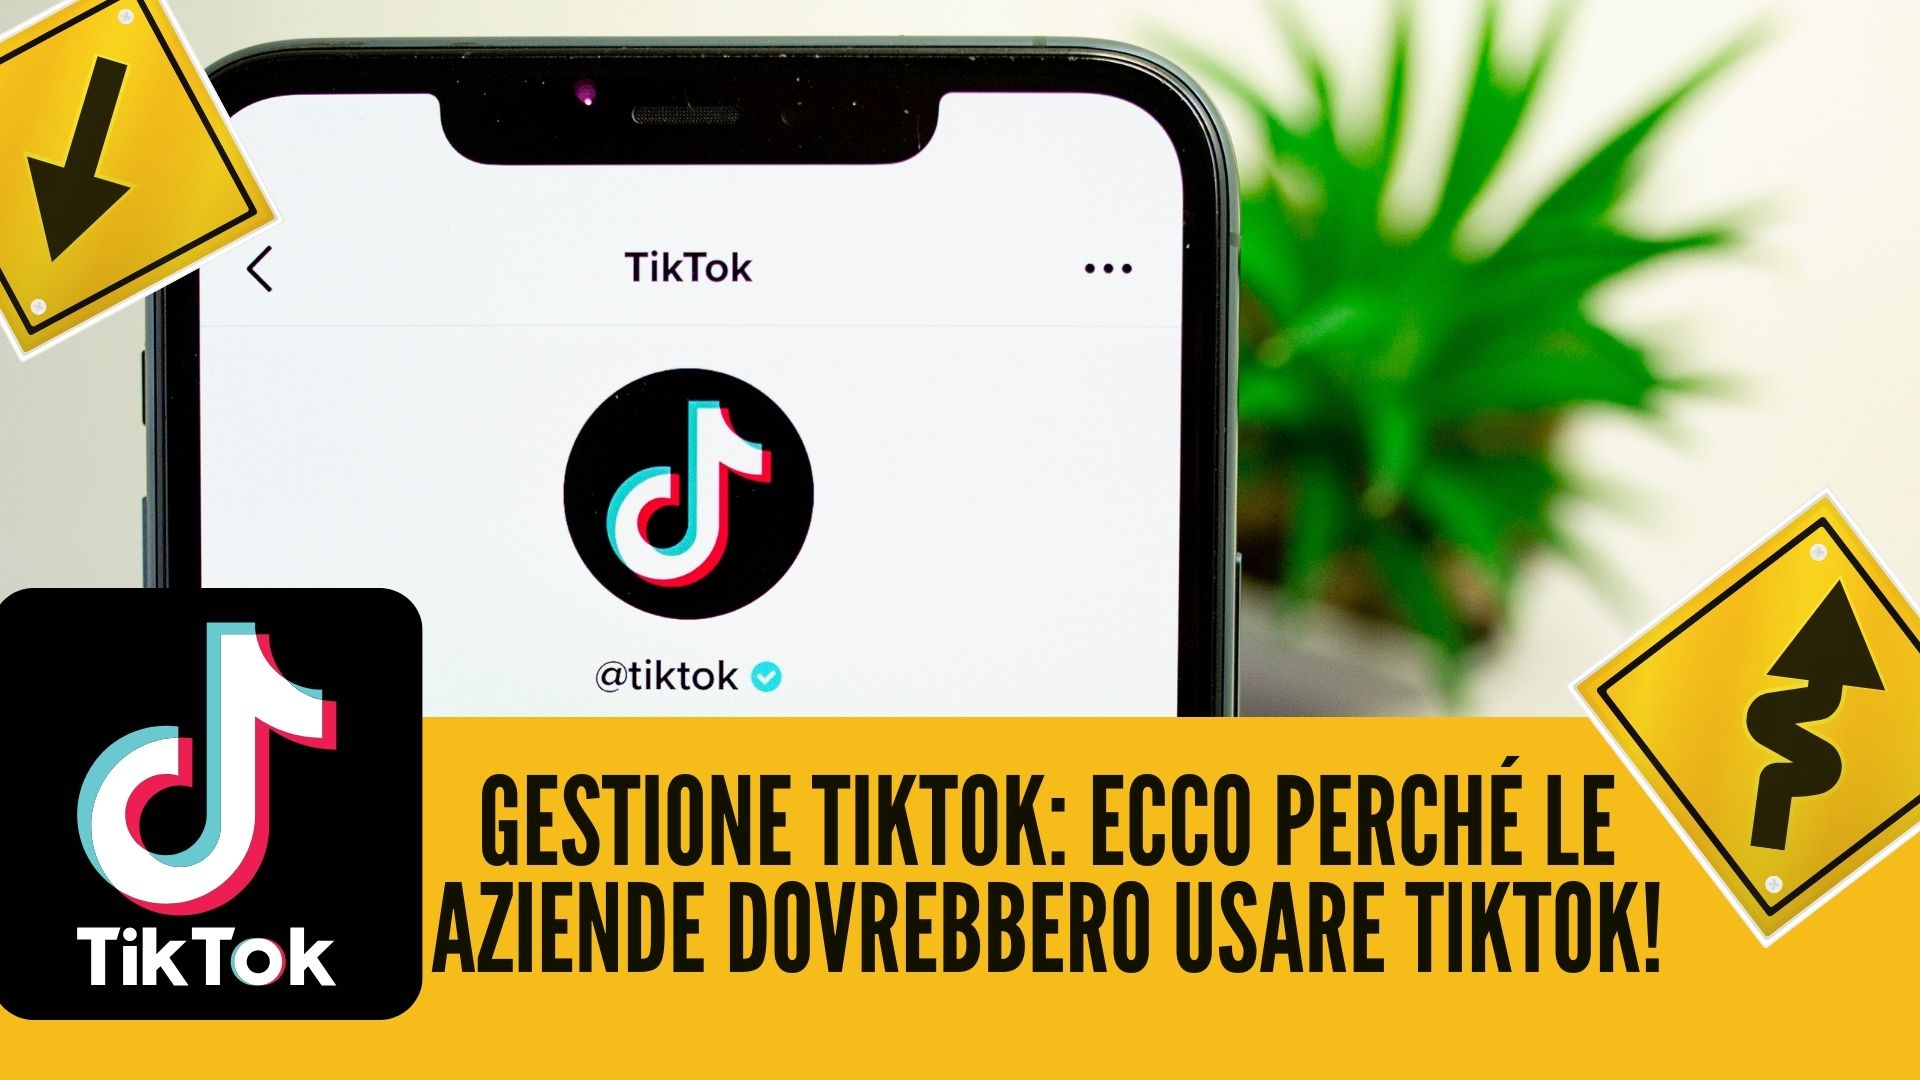 Gestione TikTok: Ecco perché le aziende dovrebbero usare TikTok!